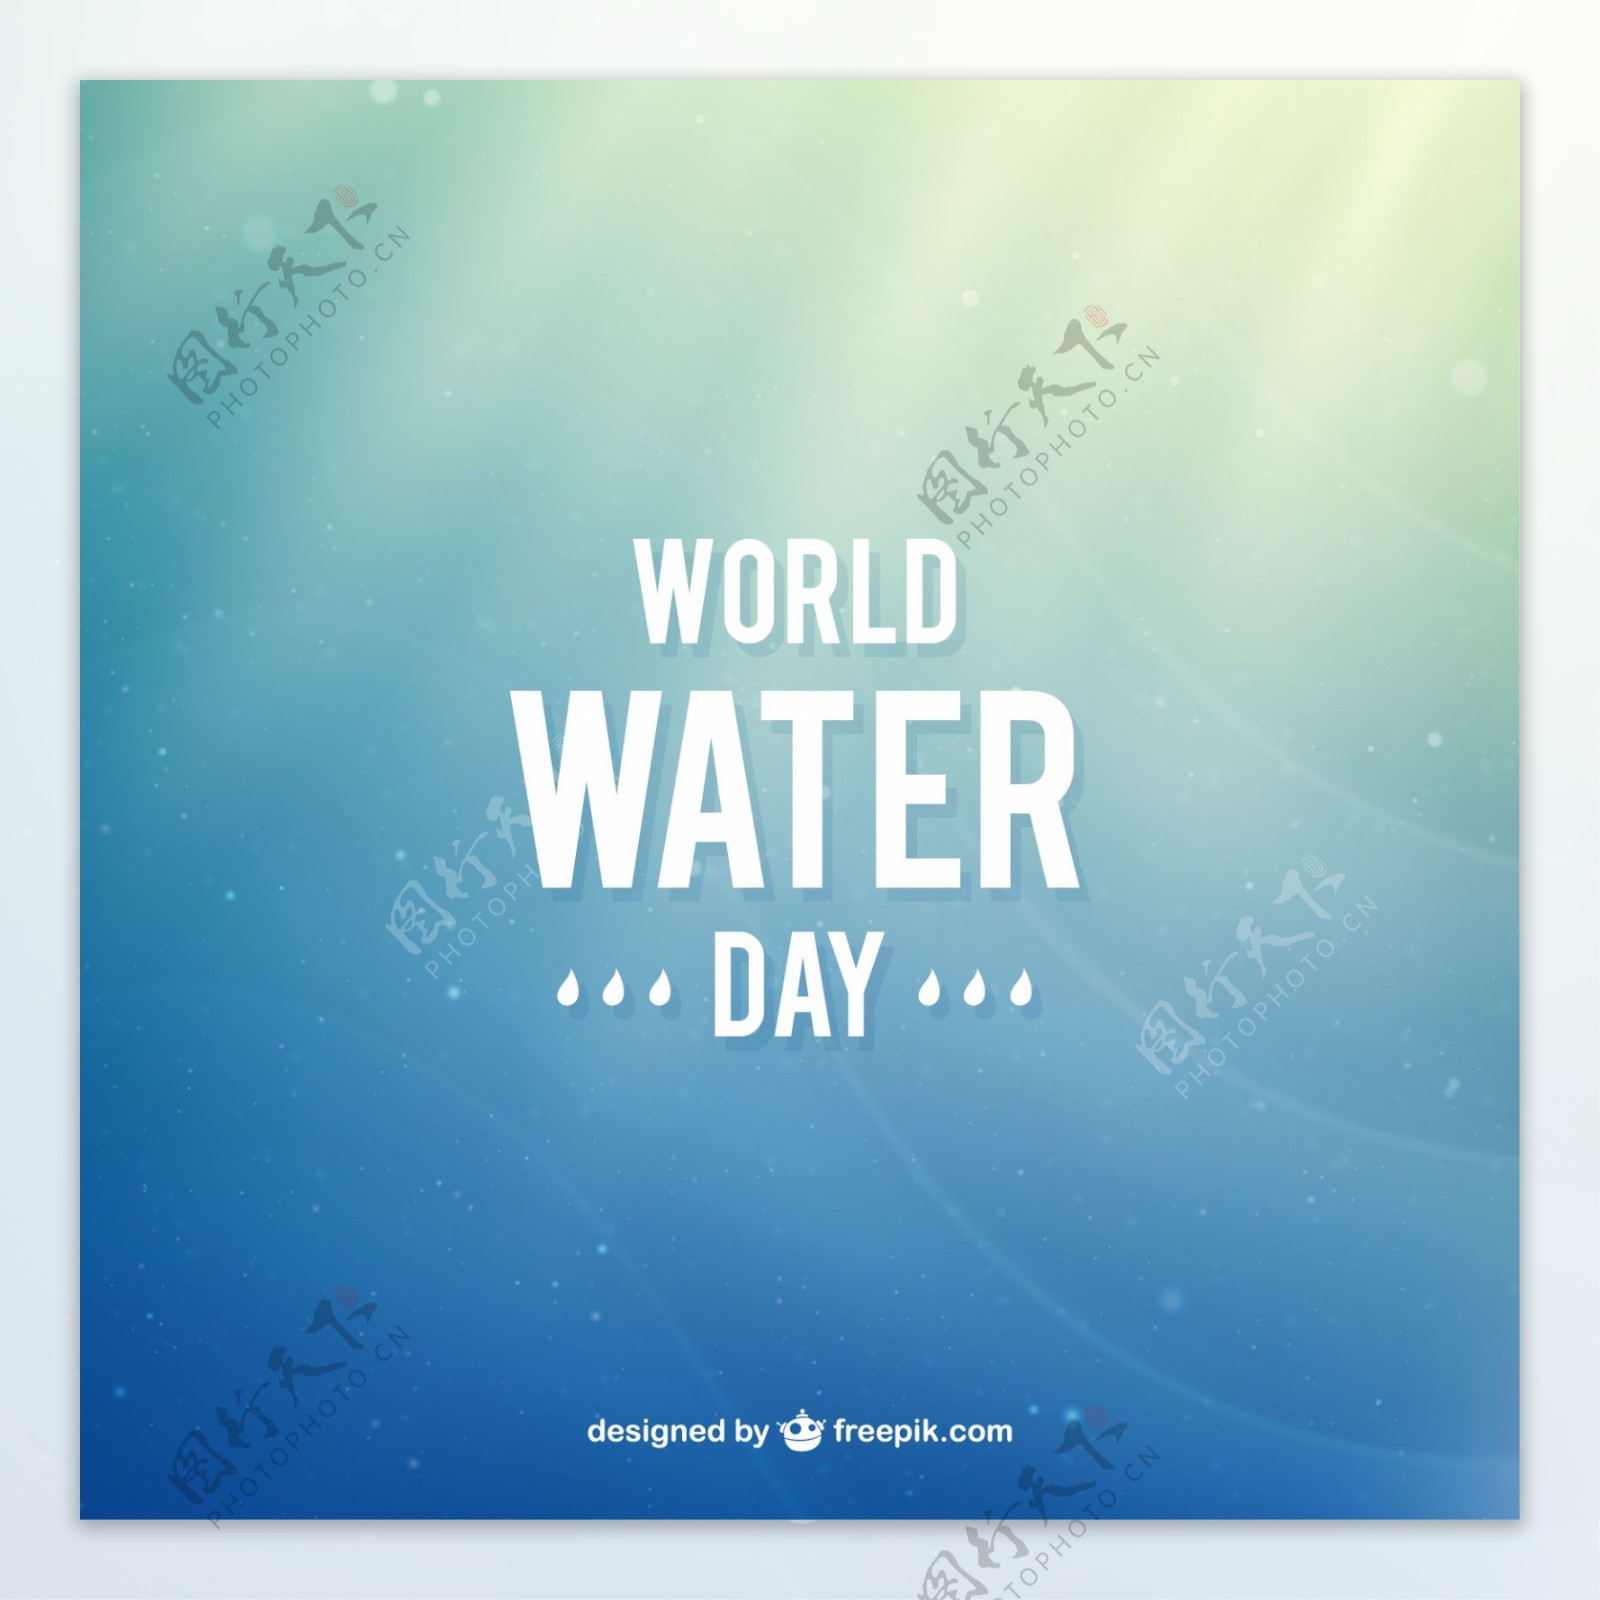 世界水日的梯度背景